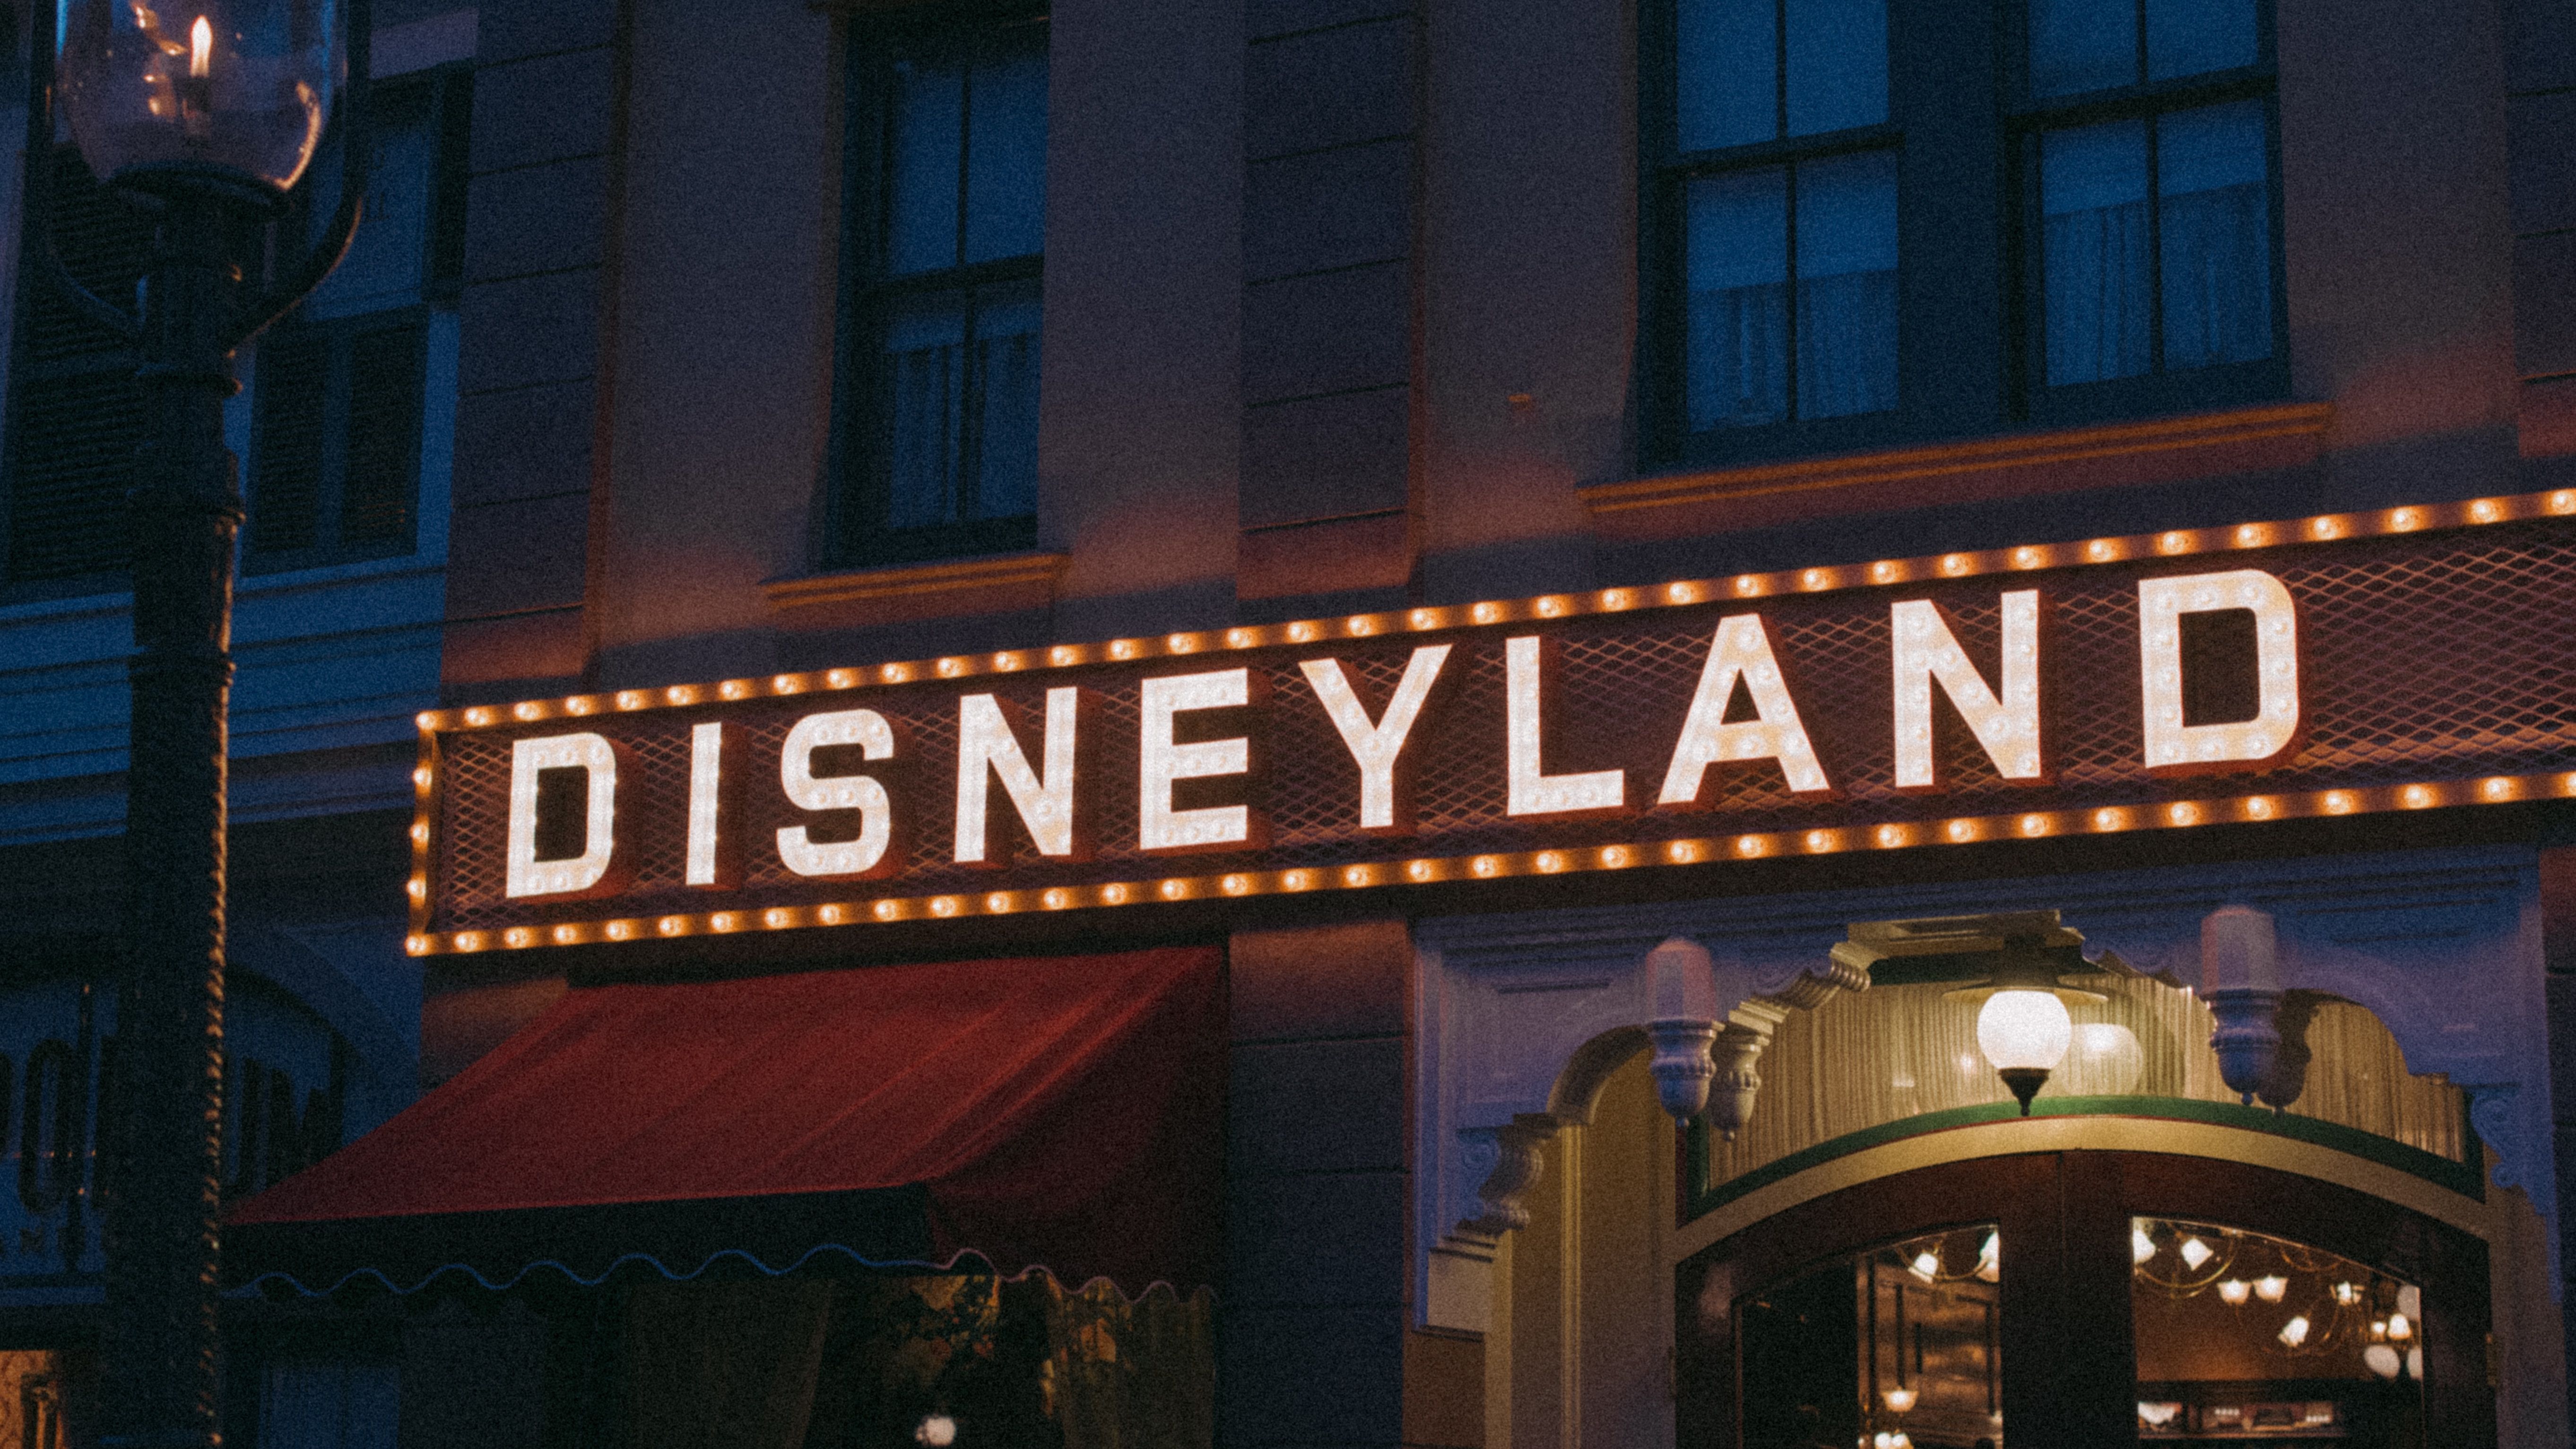 Disneyland sign anaheim